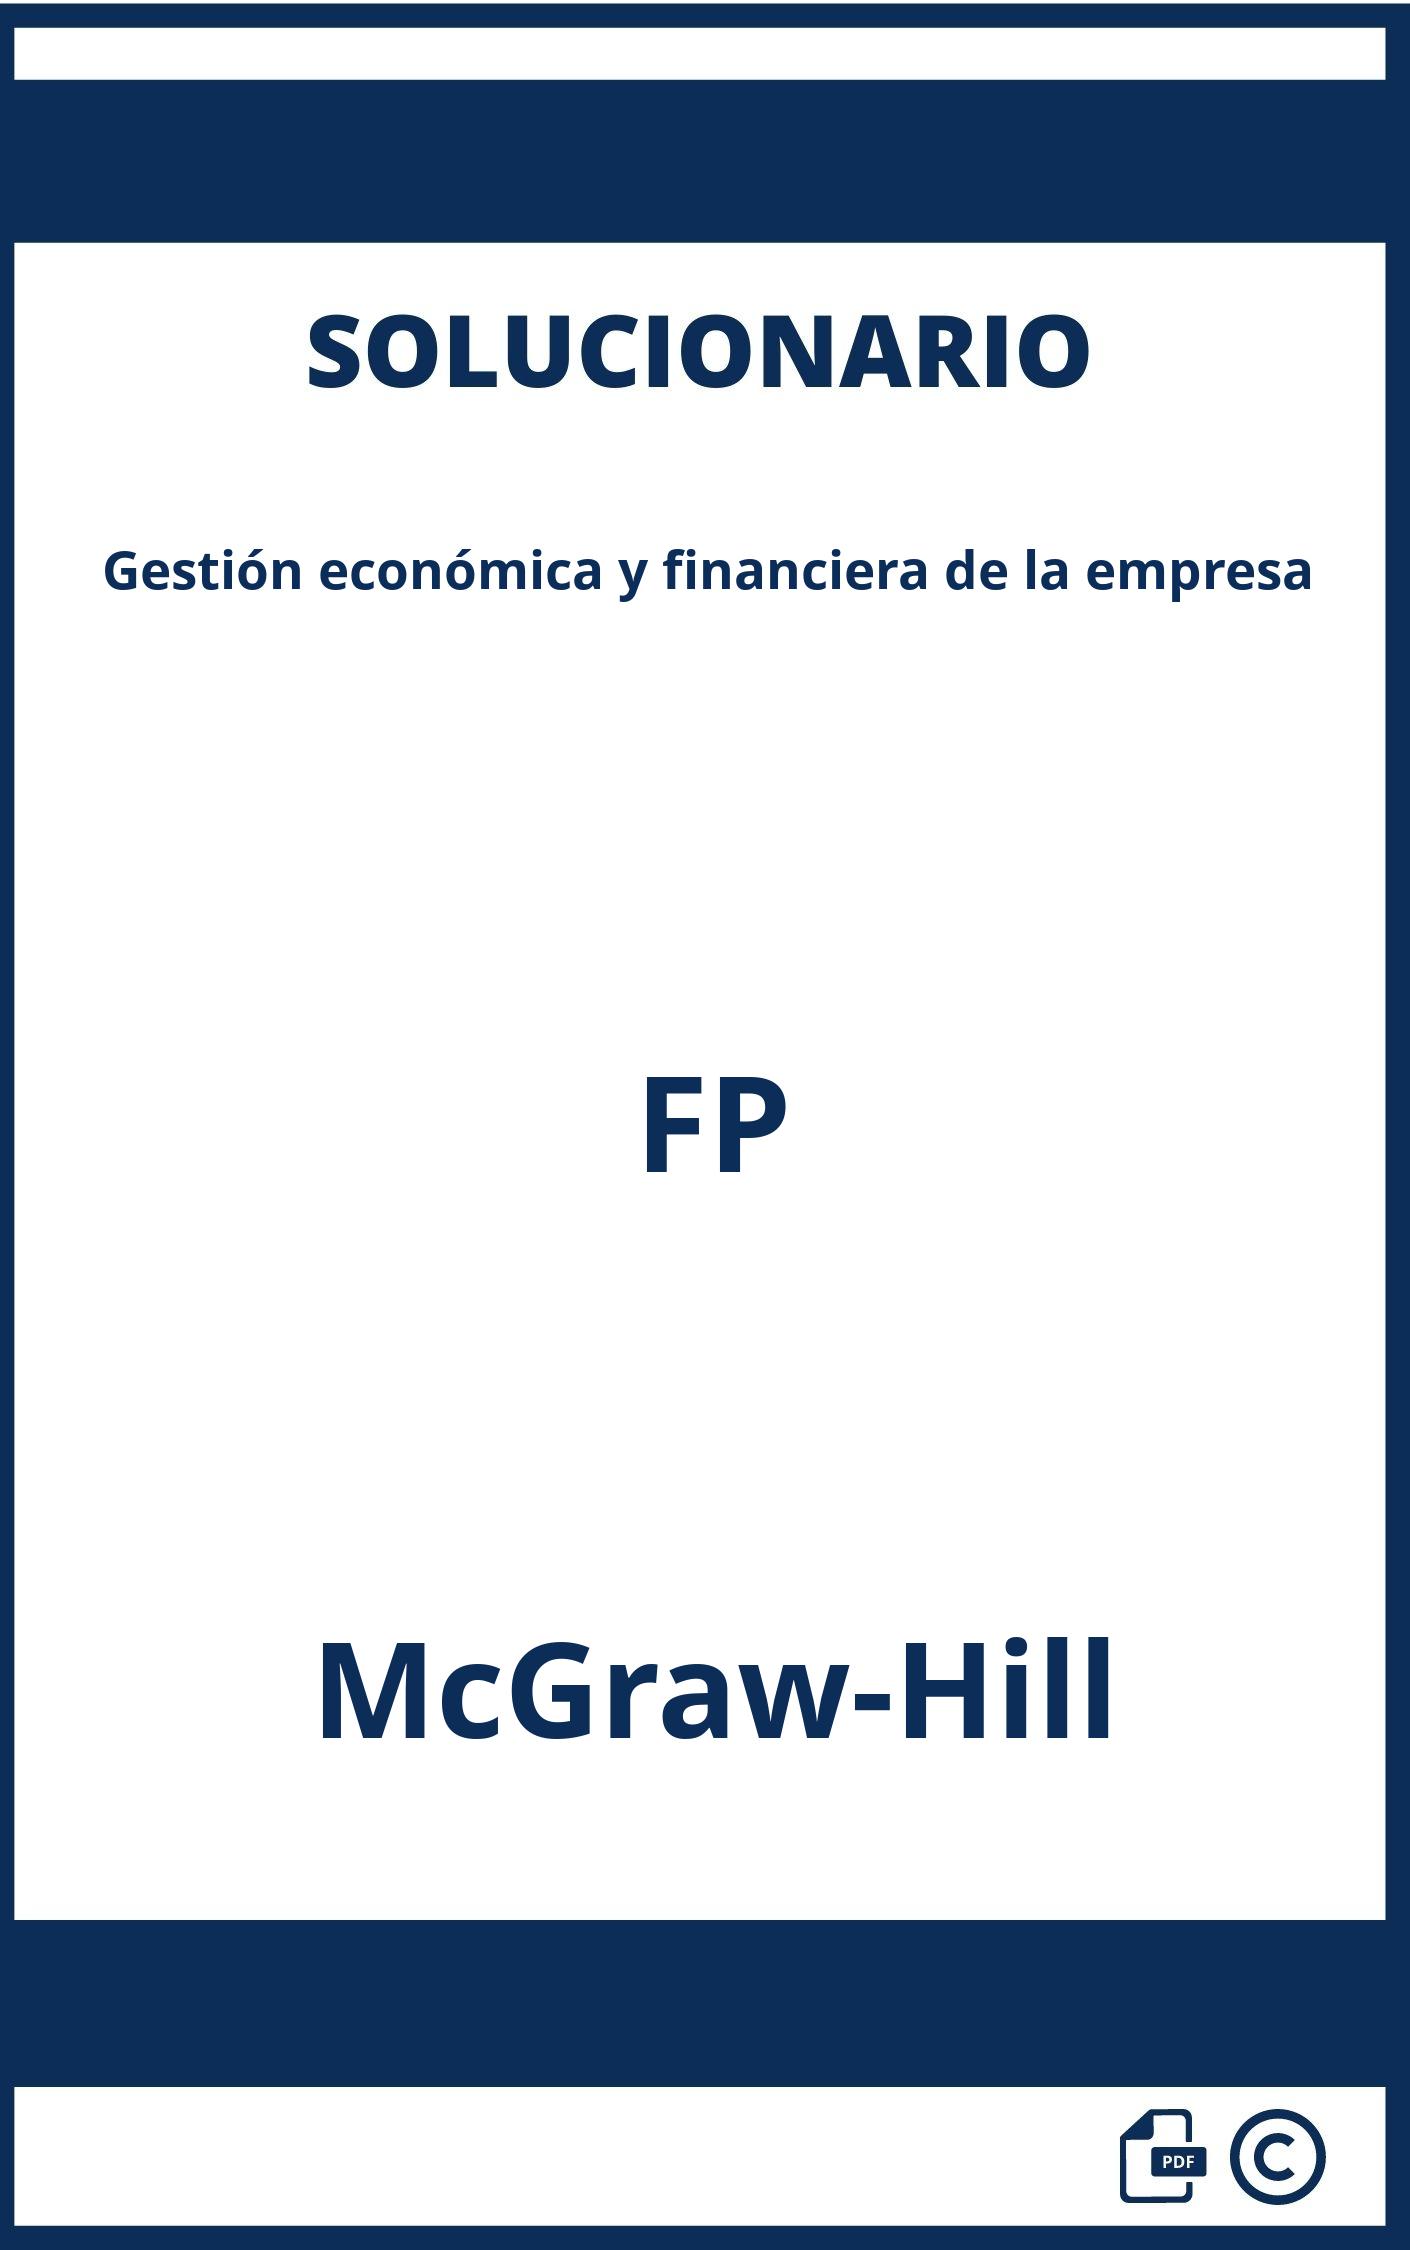 Solucionario Gestión económica y financiera de la empresa FP McGraw-Hill